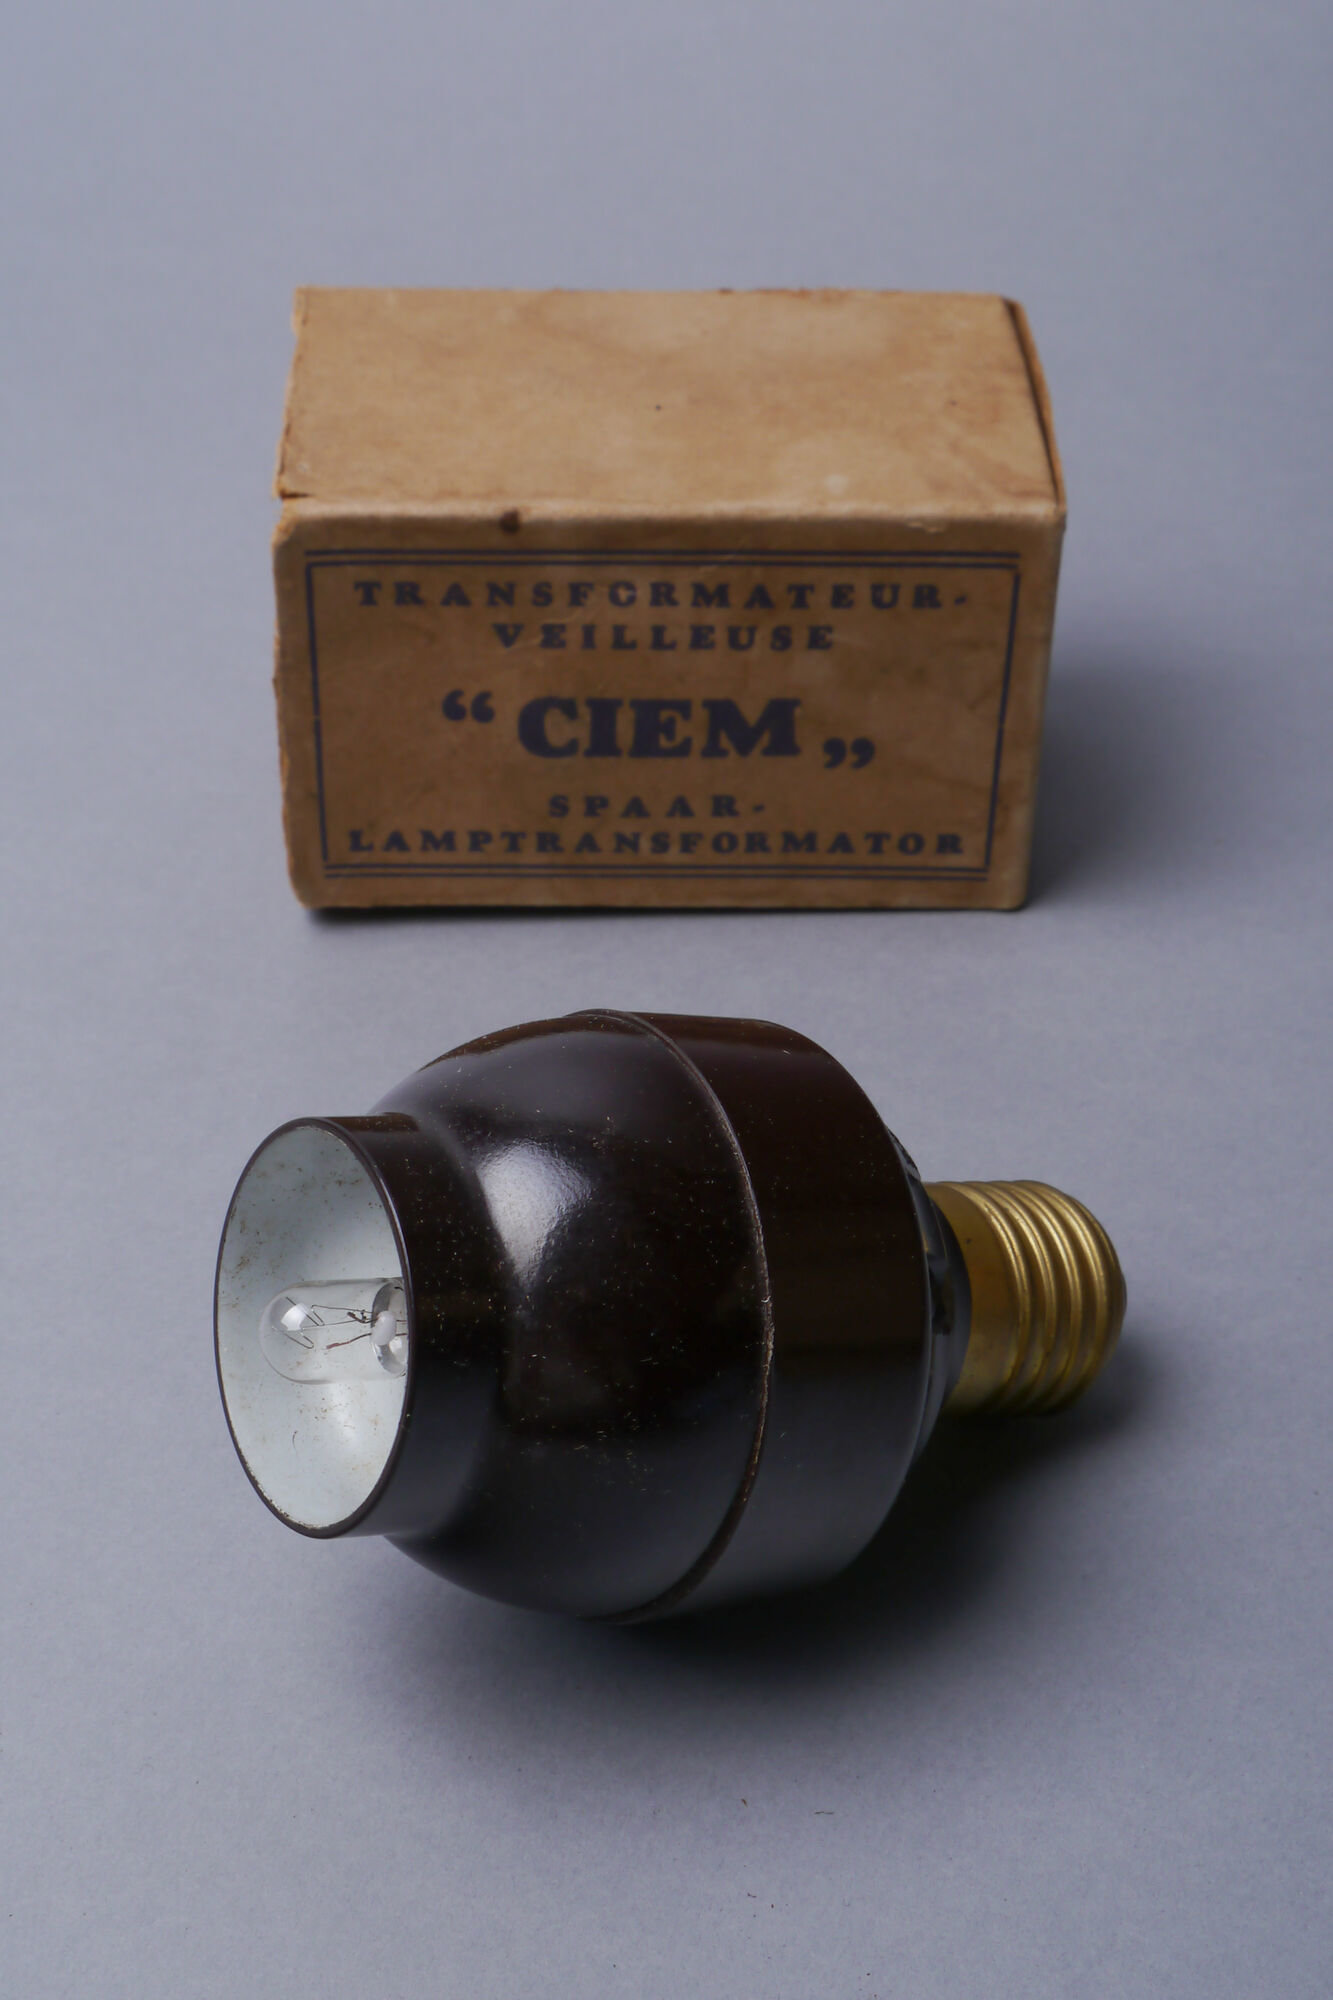 Spaarlamptransformator voor een lamp van het merk Ciem